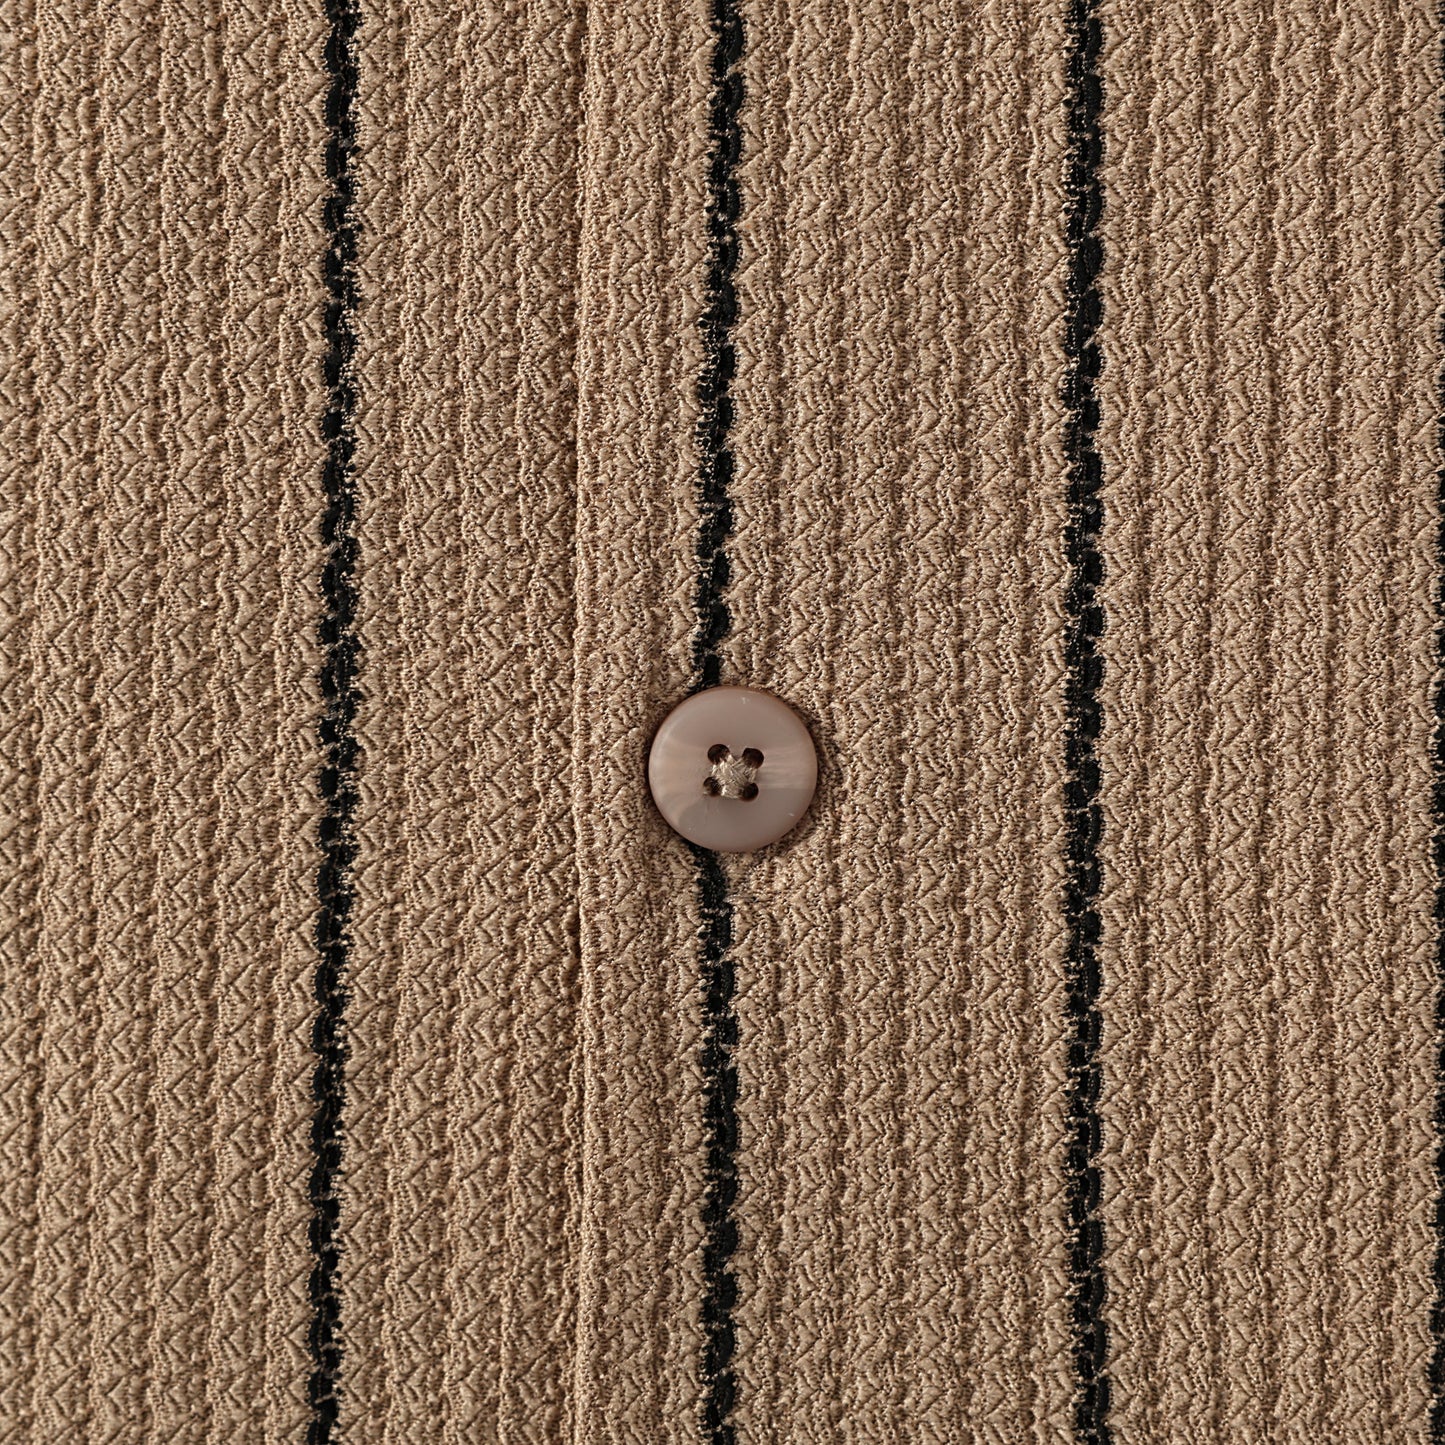 Brown Stripe Crochet Textured Camp Collar Short Sleeve Shirt